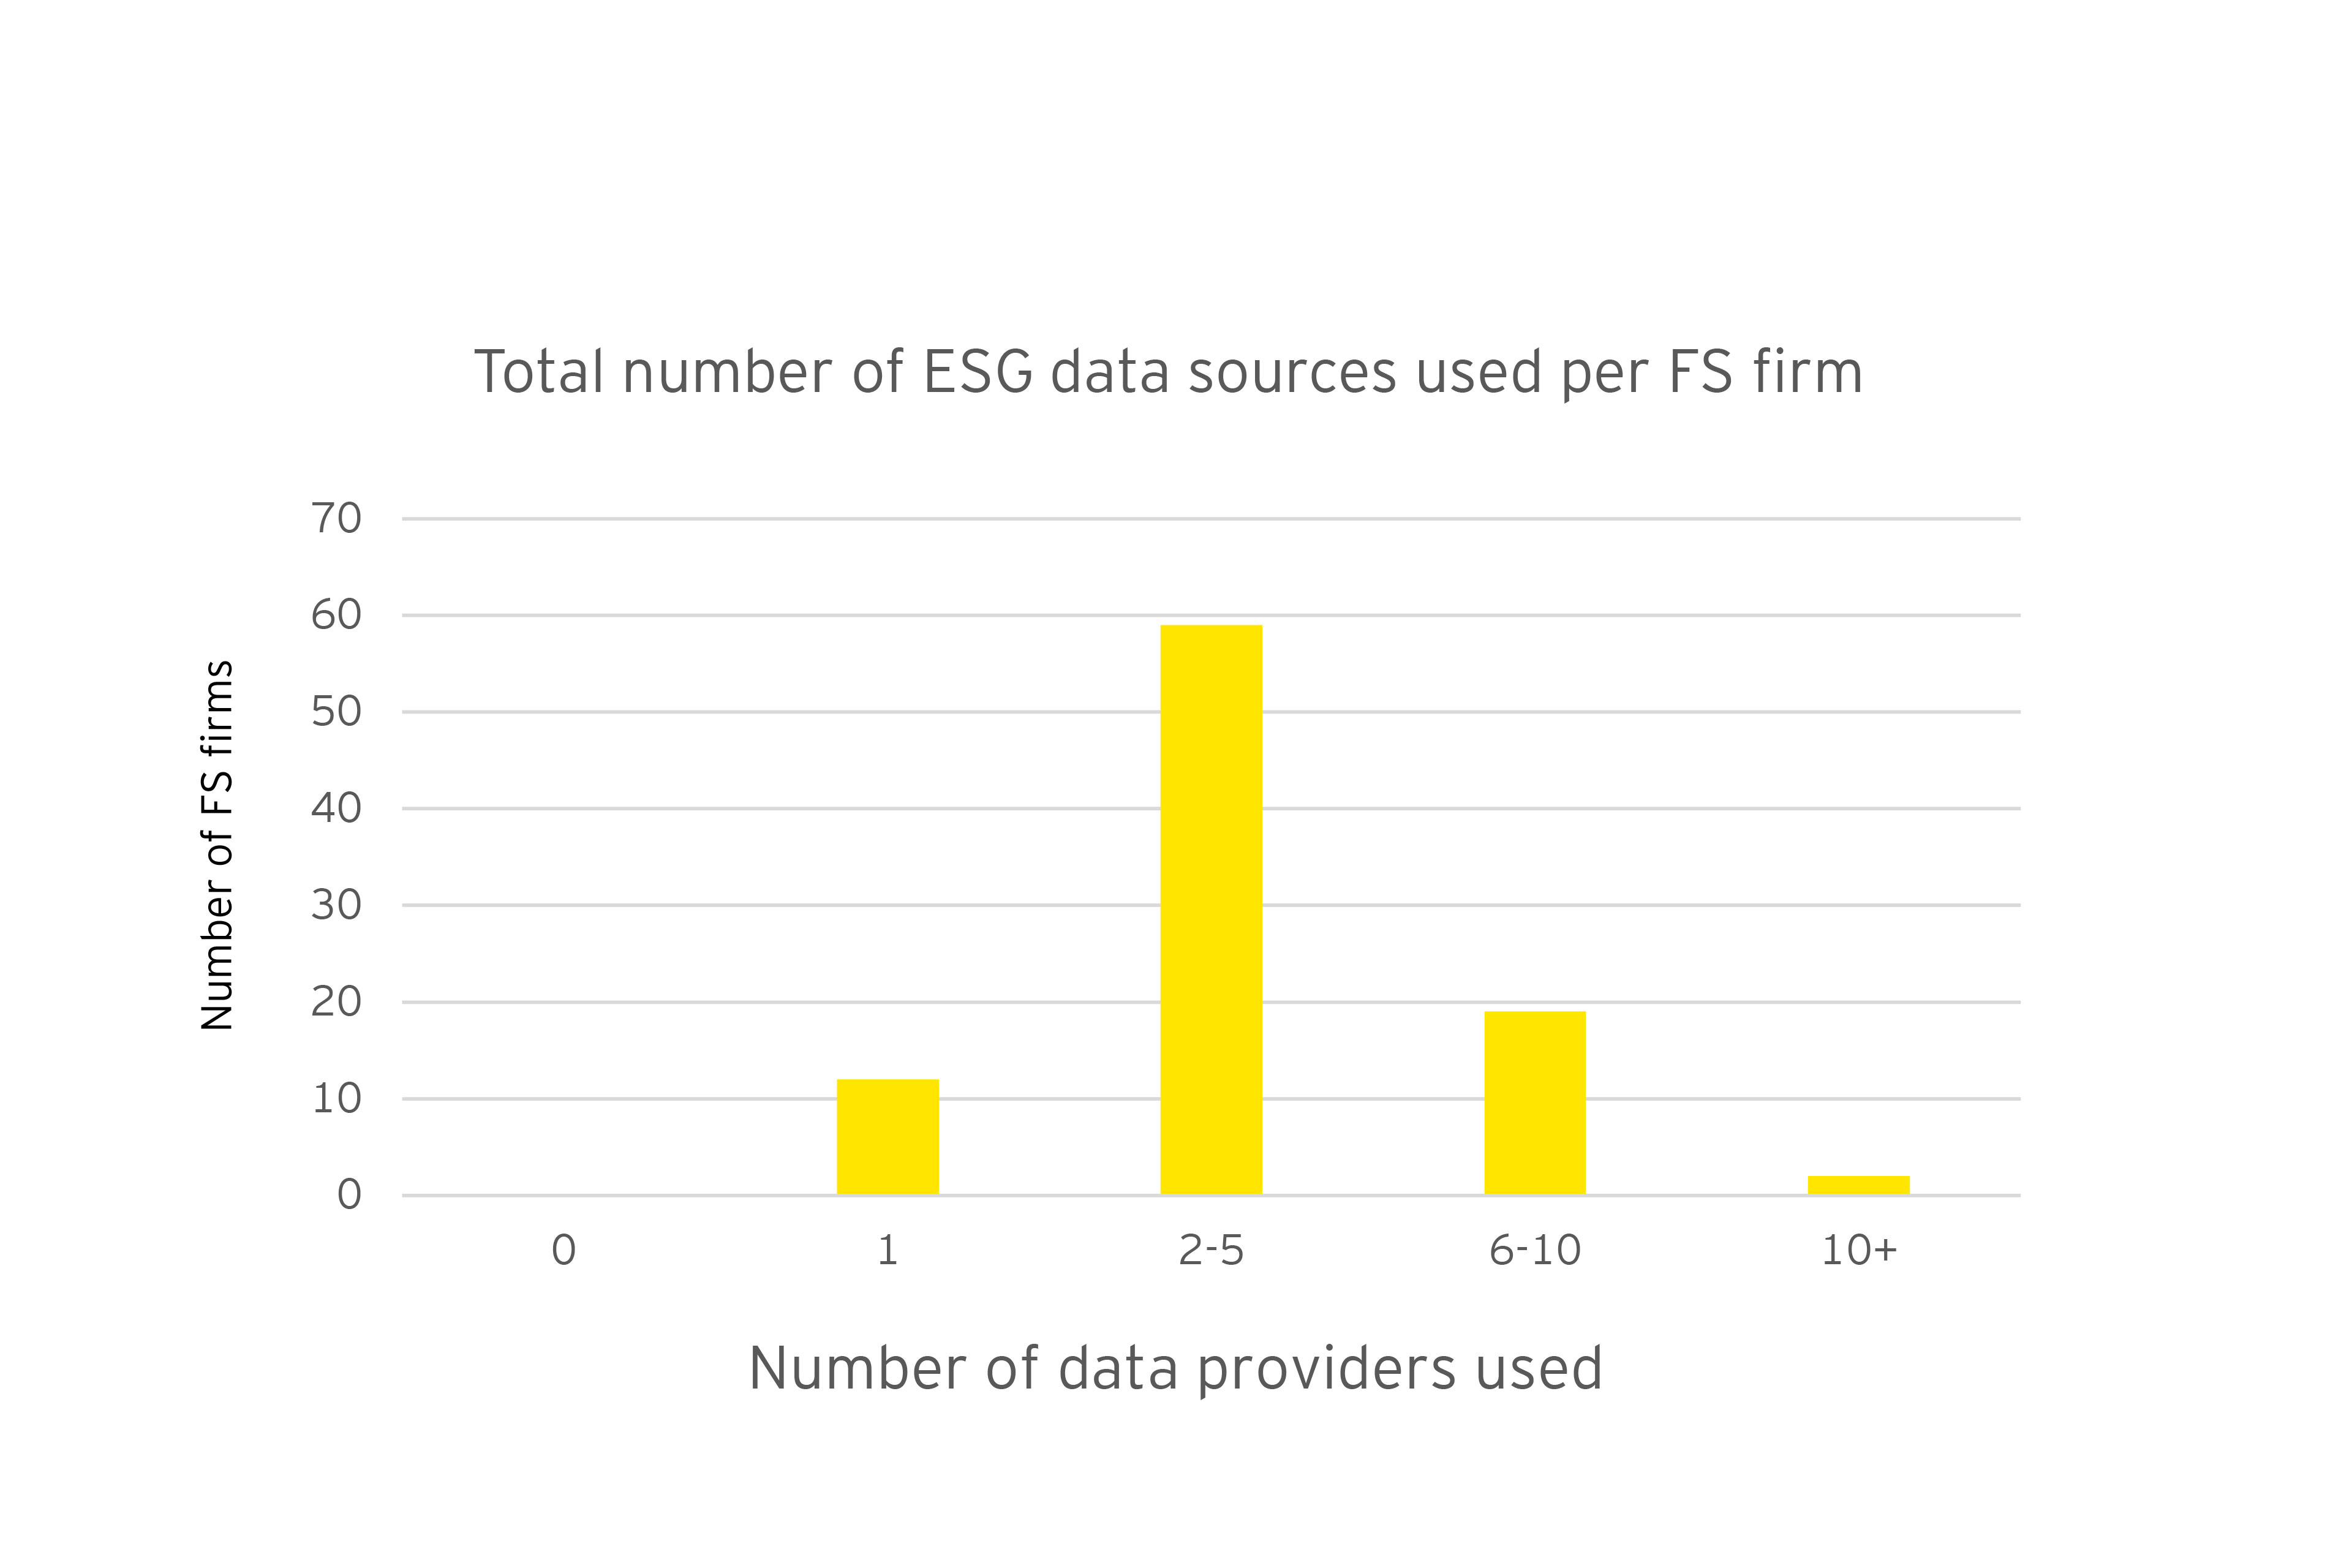 Celkový počet poskytovateľov ESG údajov na jednu firmu poskytujúcu finančné služby